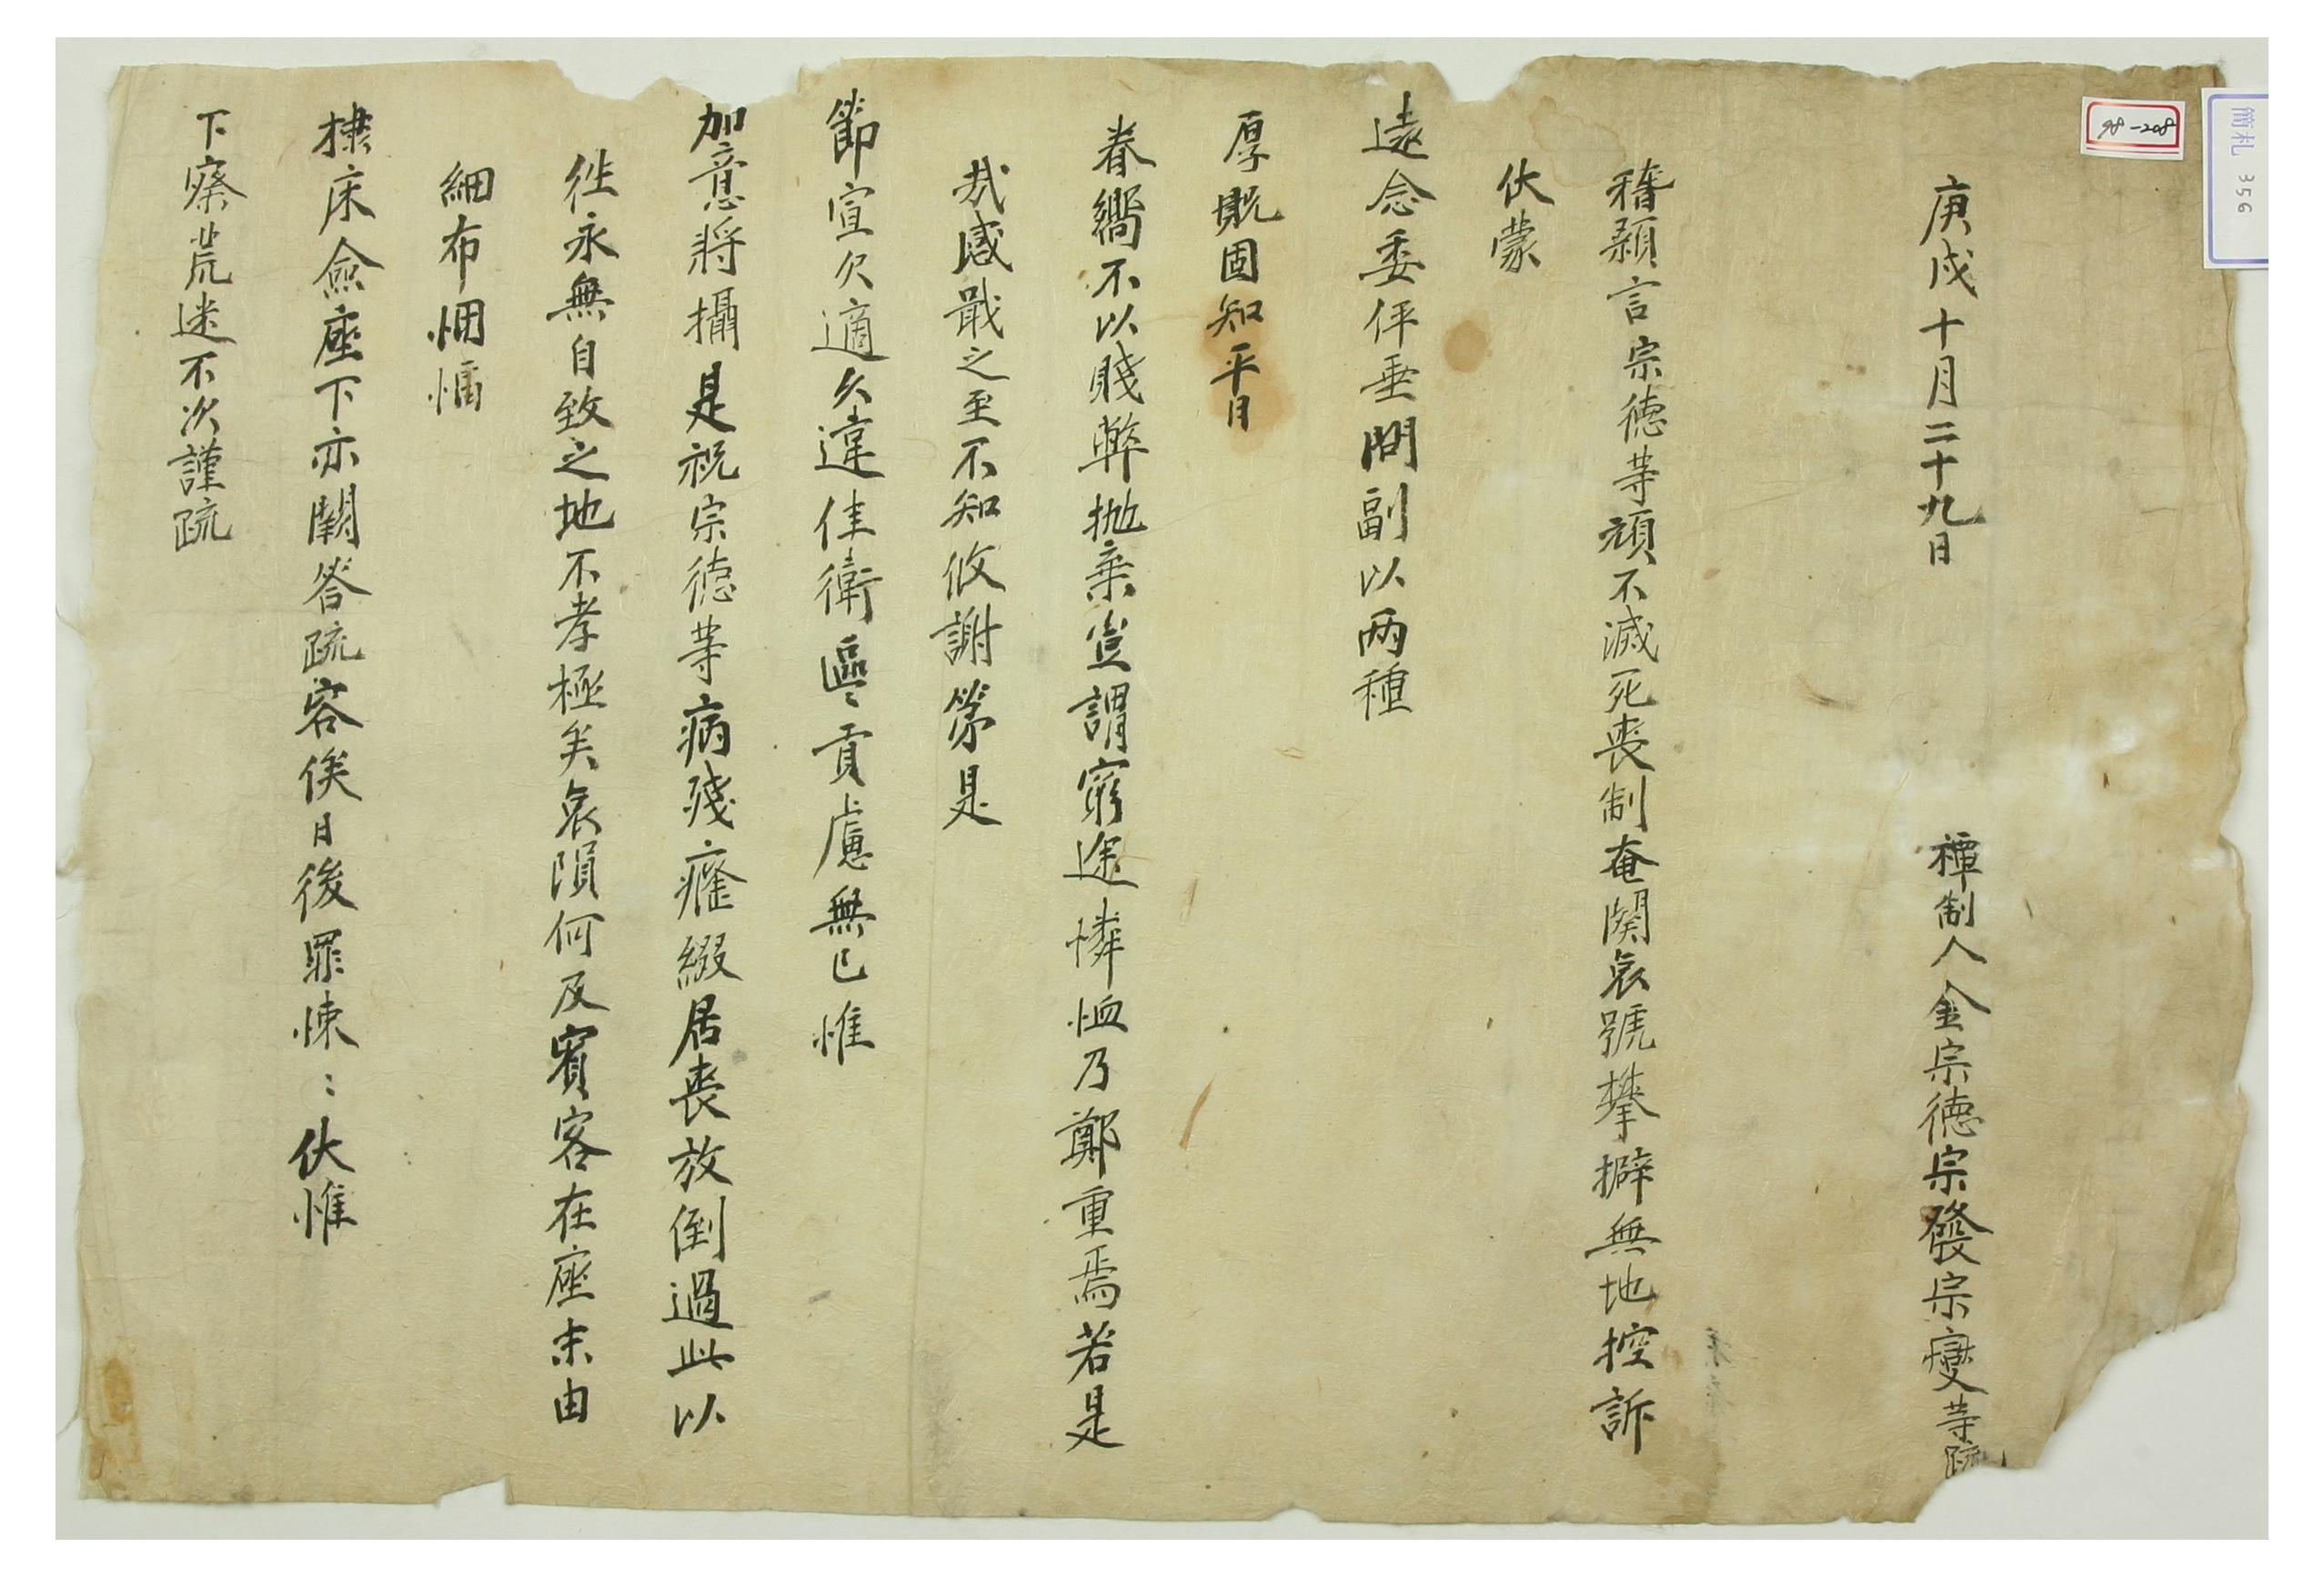 1790년에 김종덕 3형제가 선물을 보내준 상대에게 쓴 편지